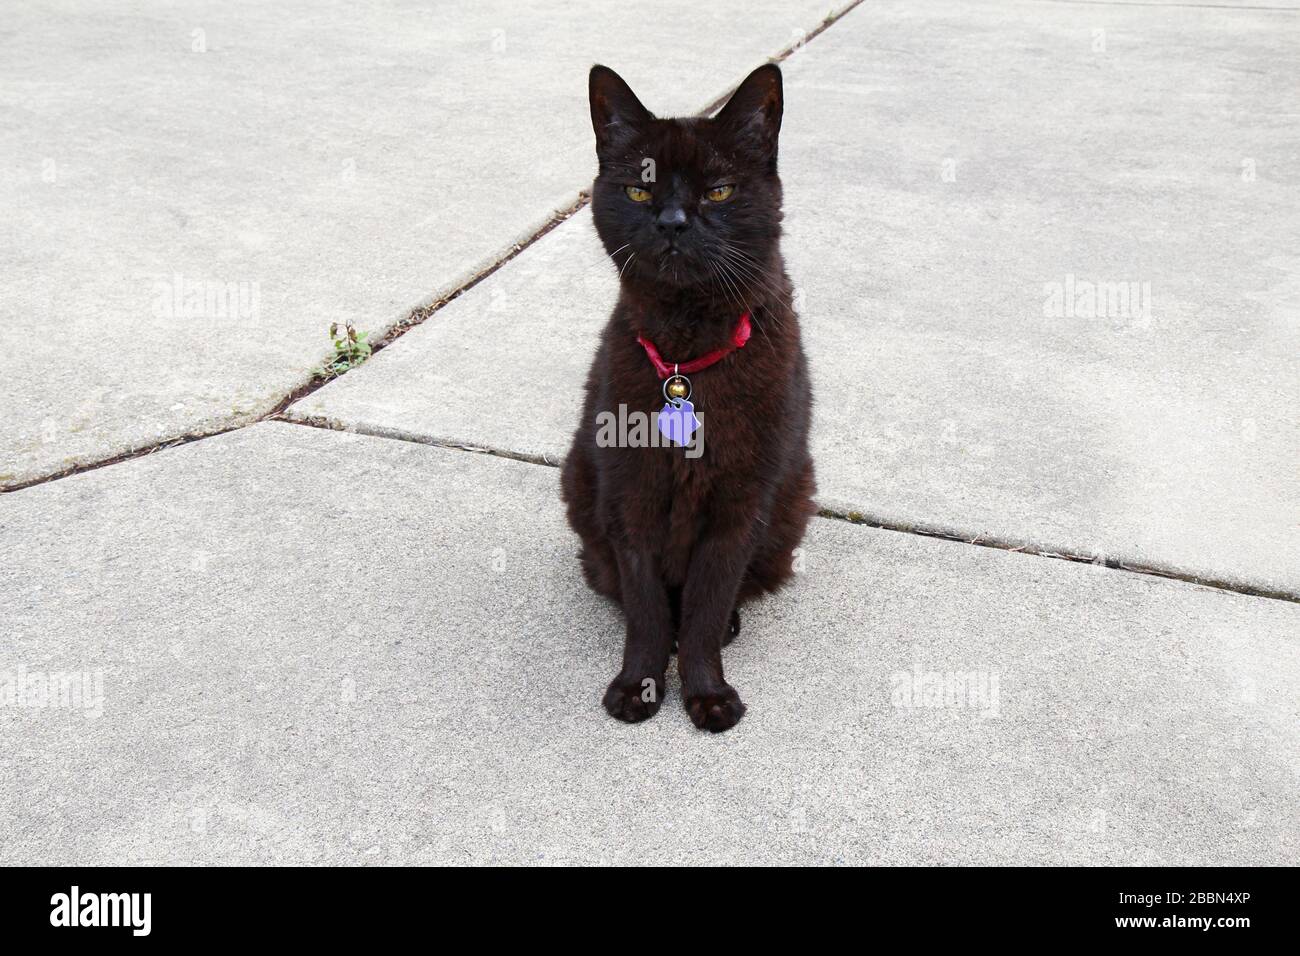 Un gato doméstico negro de shortair (Felis catus) con un cuello rojo, etiqueta púrpura y campana Foto de stock